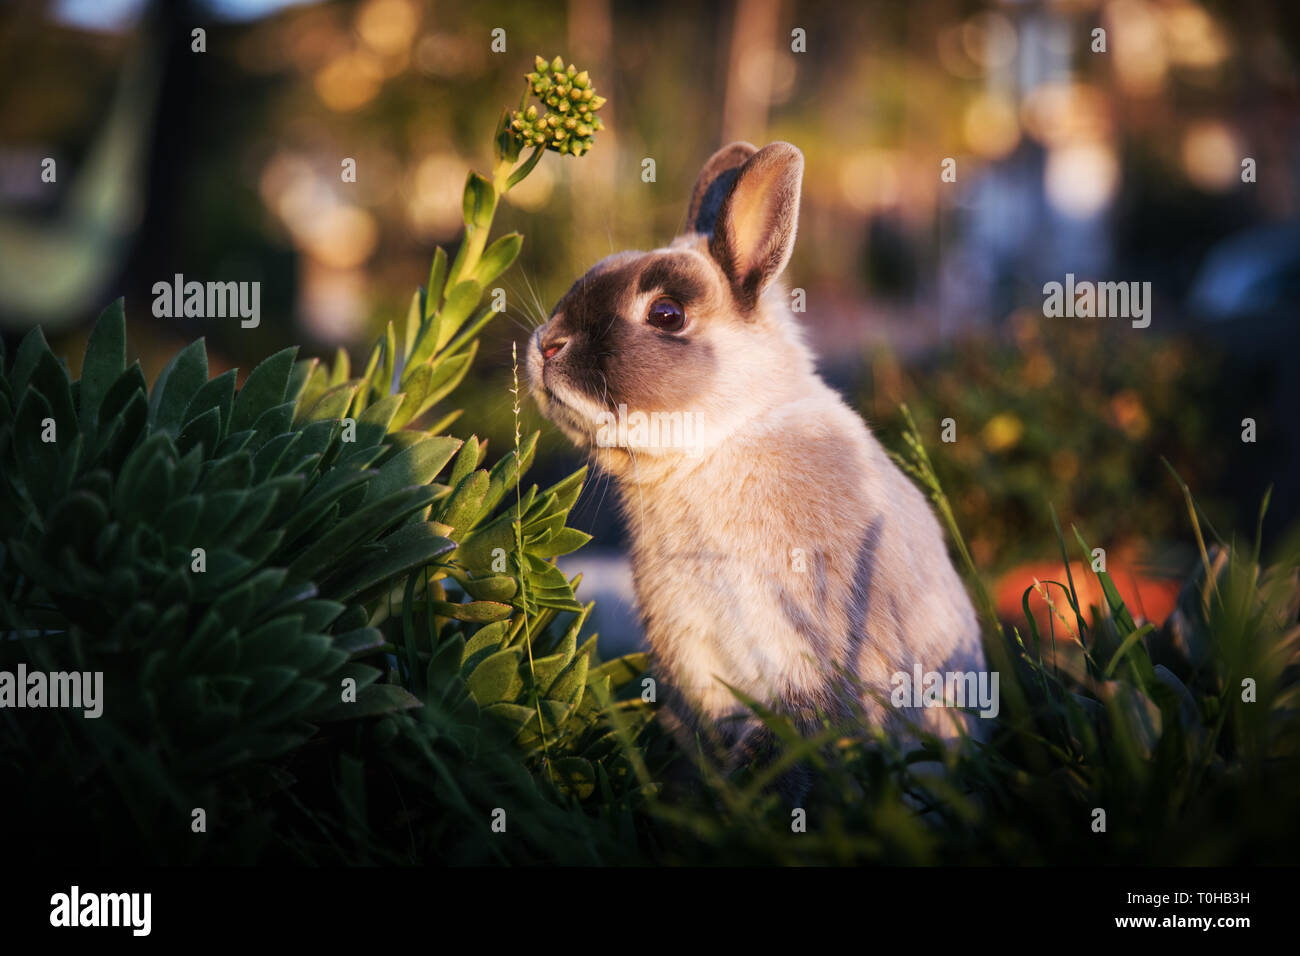 Ein Zwerg Bunny in einem grünen Garten bis zu einem saftigen Blume und starrte auf Kamera. Stockfoto